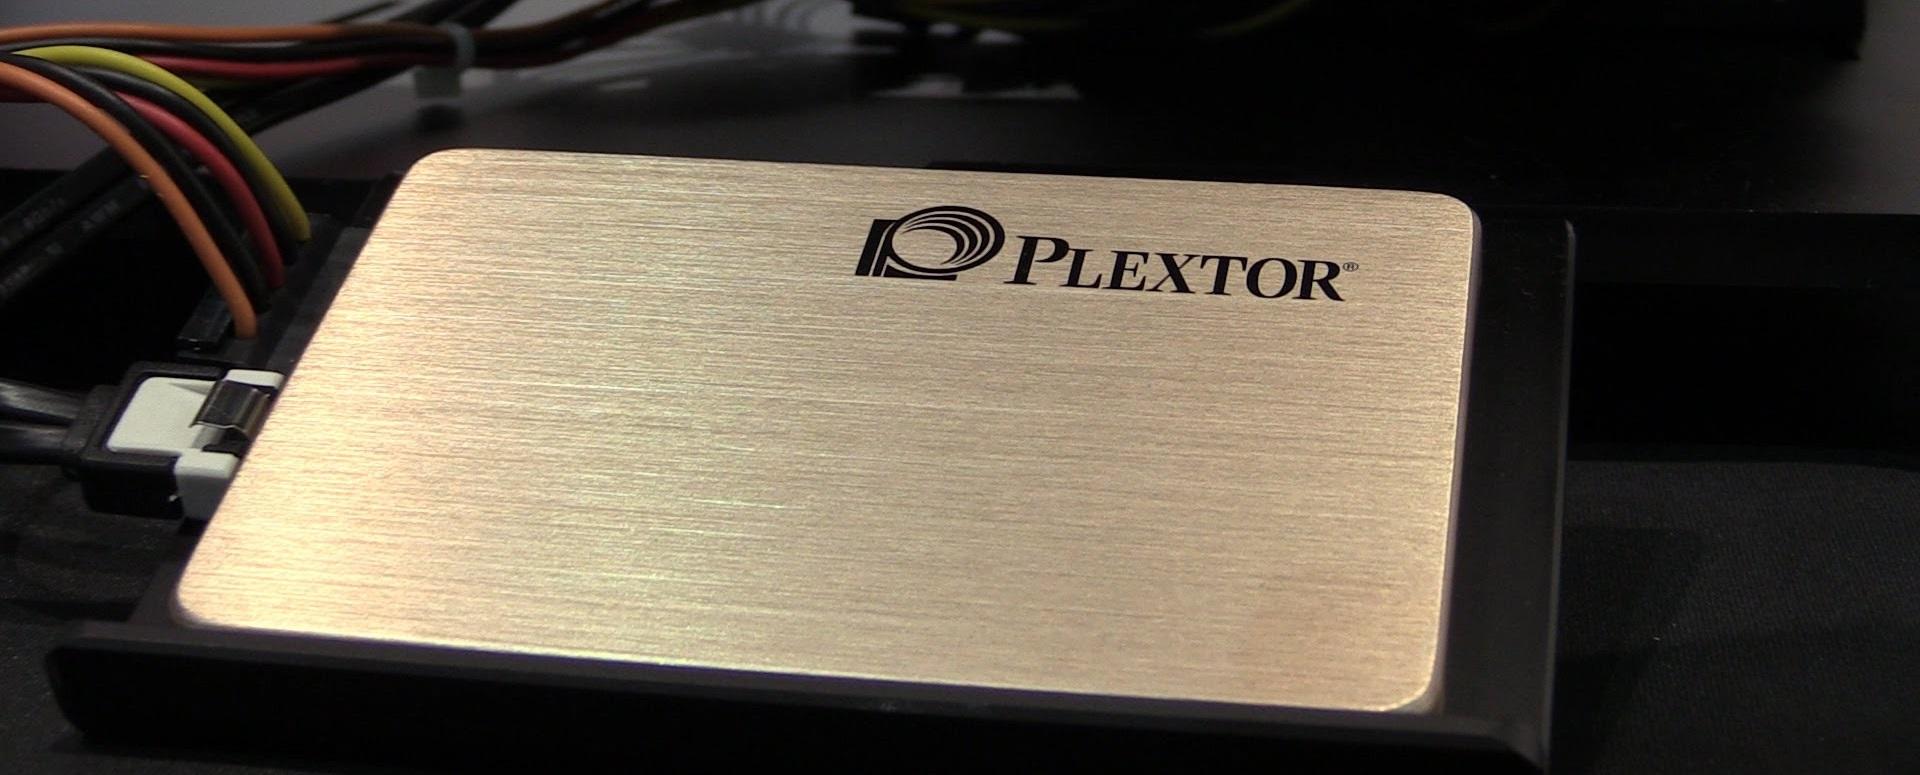 Plextor giới thiệu phần mềm độc quyền dành cho dòng SSD M6